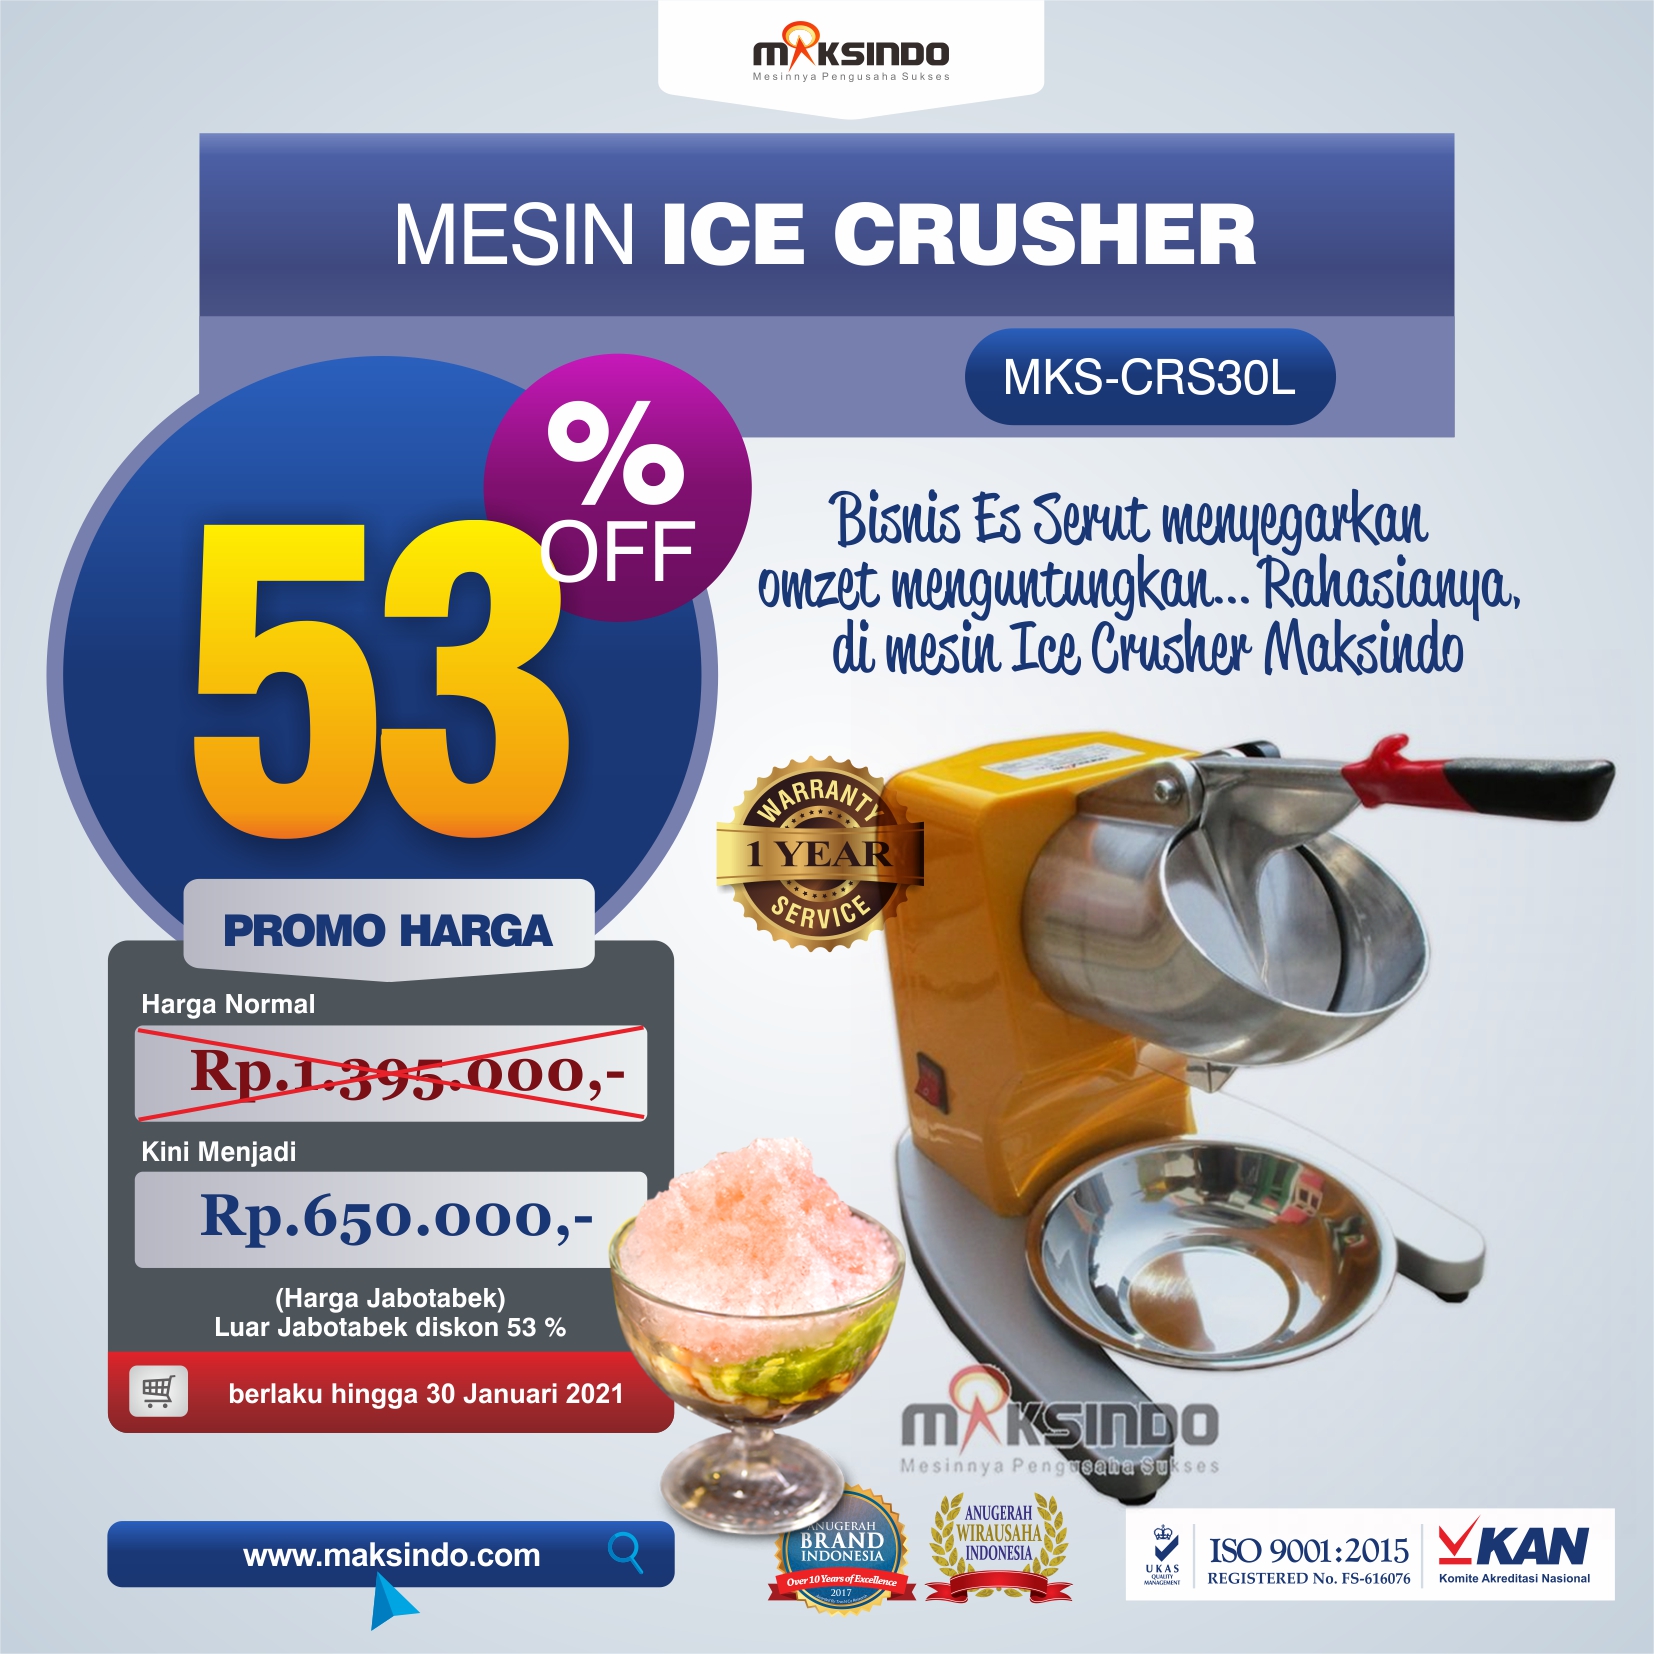 Jual Mesin Ice Crusher MKS-CRS30L di Solo